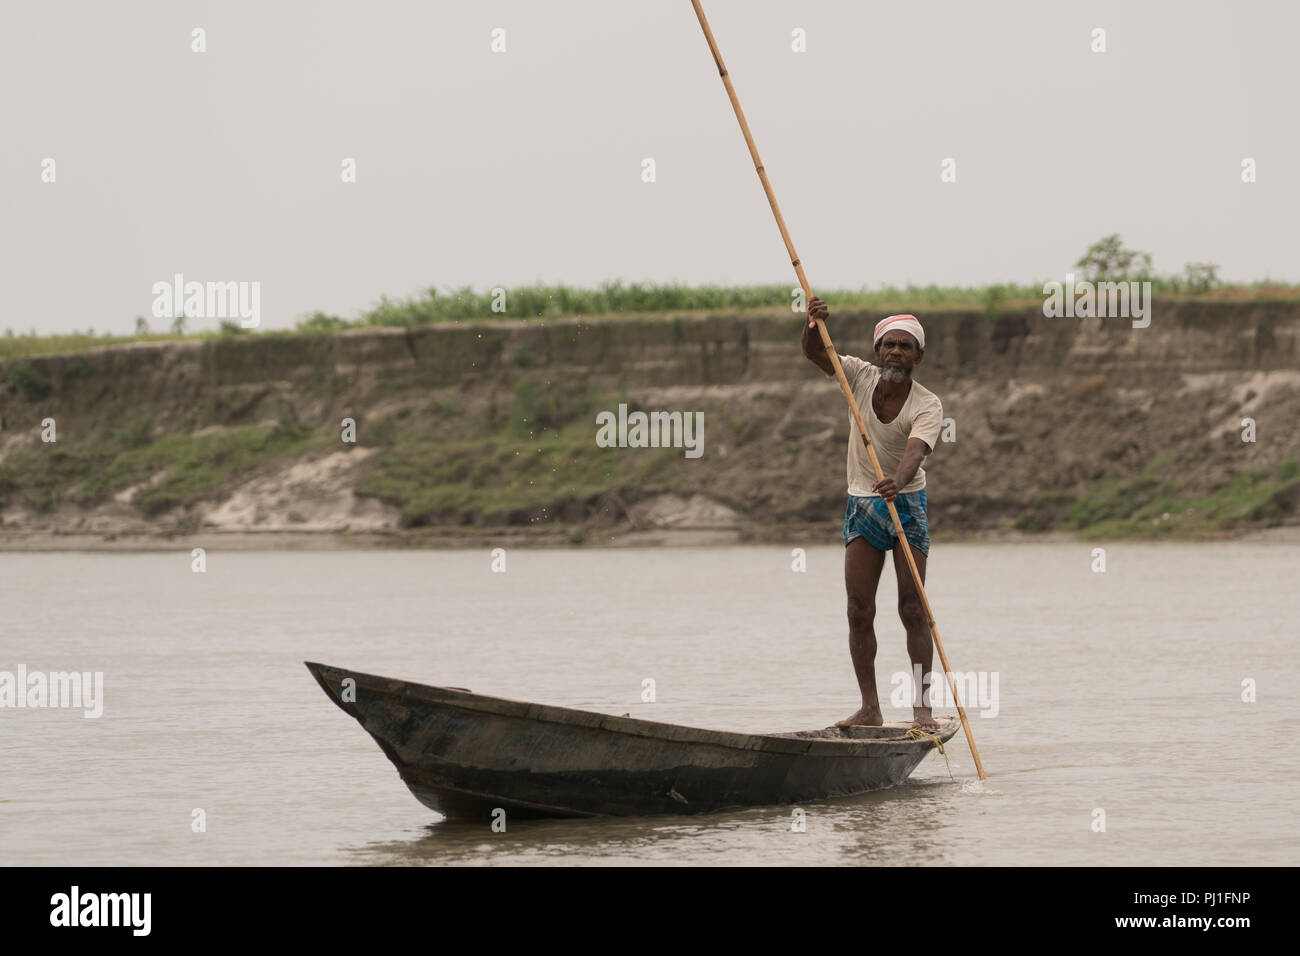 Le isole sul fiume Brahmaputra, localmente noto come 'chars', sono il la maggior parte delle aree sottosviluppate in India del nord-est stato di Assam. Il fiume 2.500 isole situate lungo la quasi 900km del tratto di fiume mighty sono la casa di alcune 2,5 milioni di persone, quasi il 80 per cento dei quali sono poveri, con scarso accesso ai servizi sanitari di base e servizi di istruzione. I caratteri hanno uno dei più alti di mortalità infantile e materna tariffe in stato. In assenza del servizio medico di emergenza, si impiegano da 4 a 6 ore per un paziente da un char per raggiungere un quartiere in ospedale per il trattamento. Foto Stock